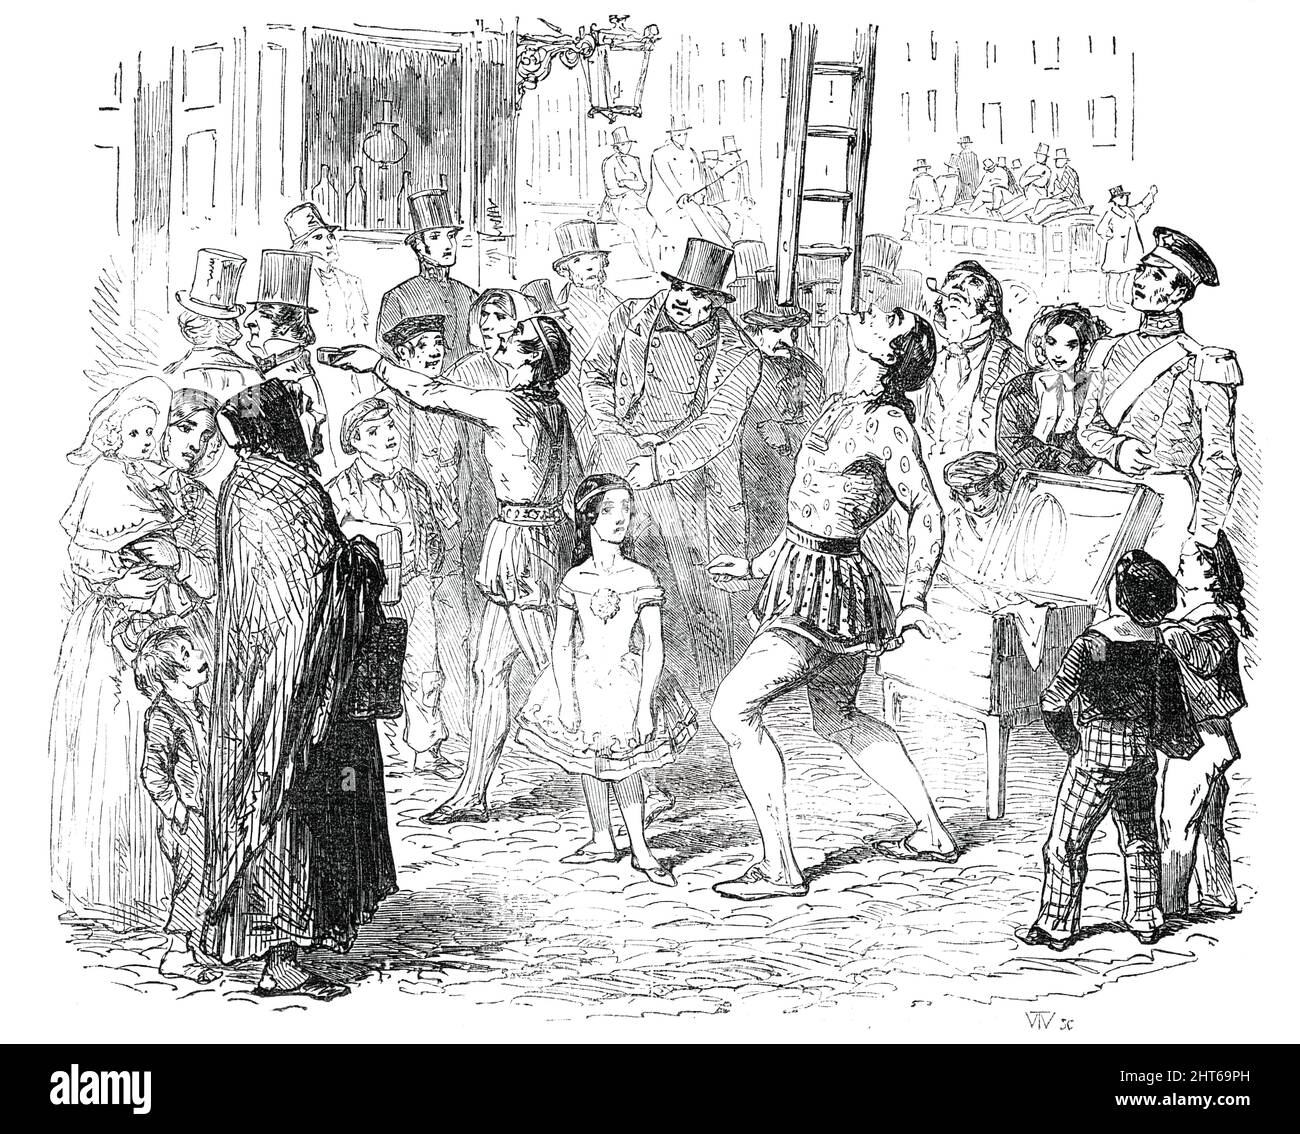 Malerische Skizzen von London - Street Sights, 1850. Ein „...Balancer... nimmt eine Leiter, die hoch genug ist, um ein Fenster im zweiten Stock zu erreichen, Und oben geht es ihm auf das Kinn, als wäre es nicht schwerer als das Stroh, das er gerade heruntergeworfen hat...Schau dir dieses kleine Mädchen in der verspankelten Kittel an...Sie wird herausgebracht, wie ein anderer Samson, um für die Philister Sport zu treiben. Wie hübsch sie tanzt...Wir sehen uns diese Straßenkünstler mit einem sehr nachsichtigen Blick an, wissend, dass sie kämpfen, um so gut wie möglich zu leben, und dass ihre bescheidenen Bemühungen, Tausenden Freude zu bieten.' Von &quot Stockfoto